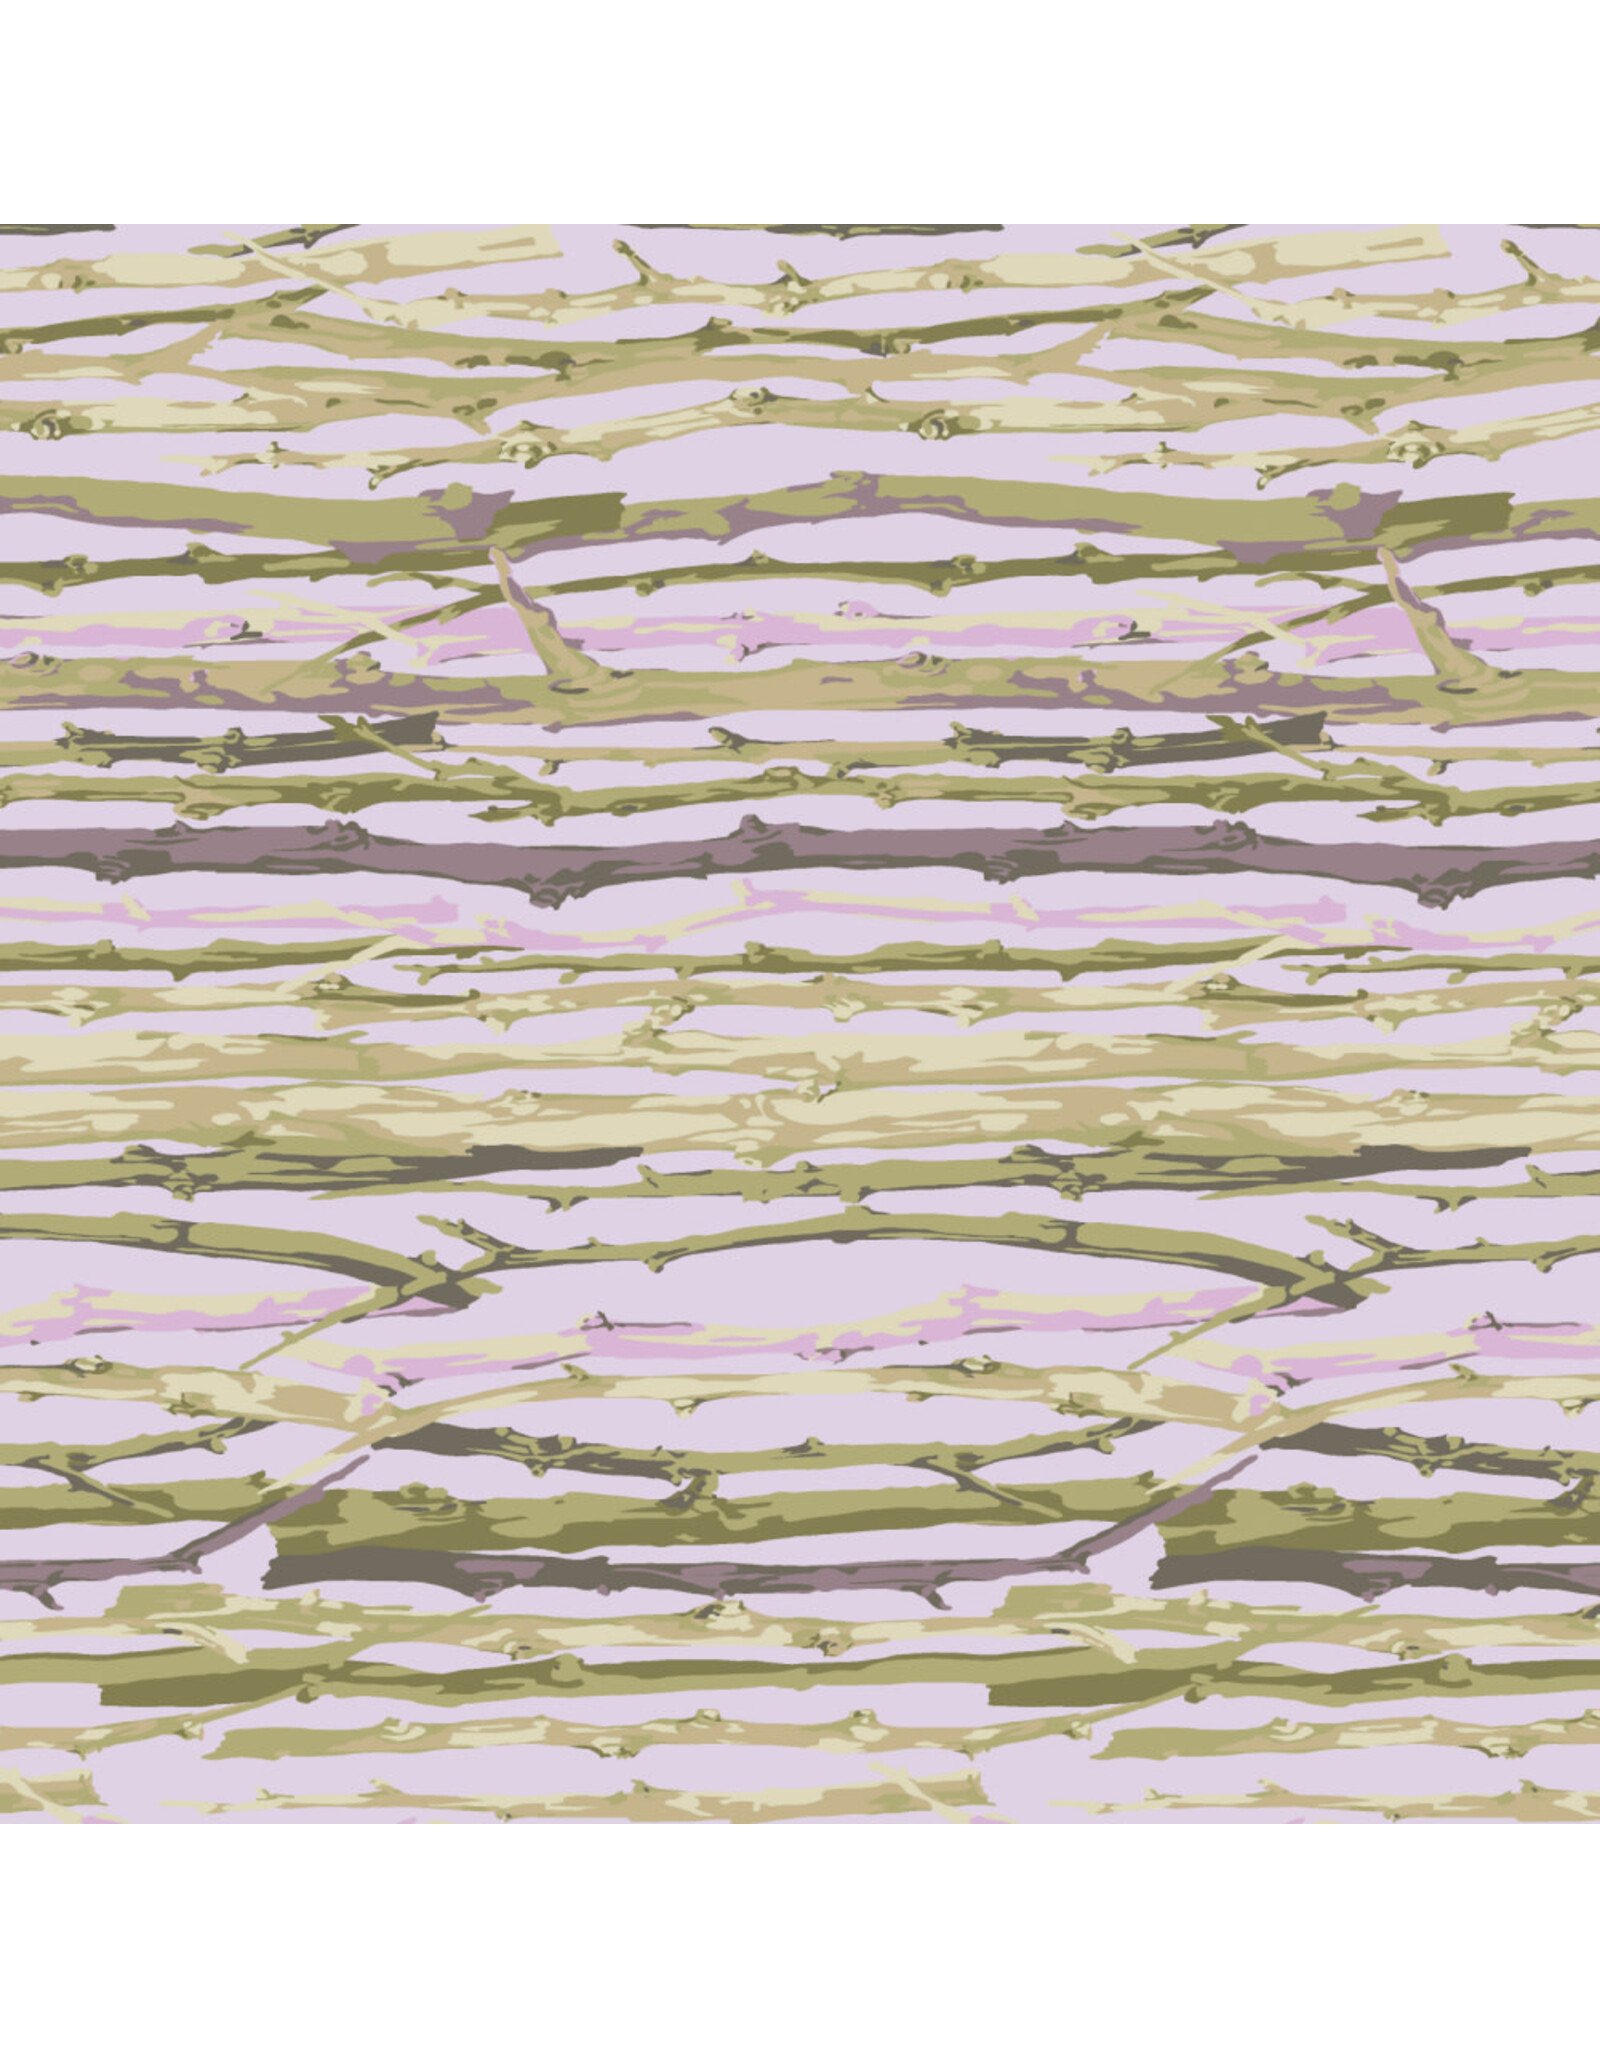 Martha Negley Garden, Twig Stripe in Lavender, Fabric Half-Yards